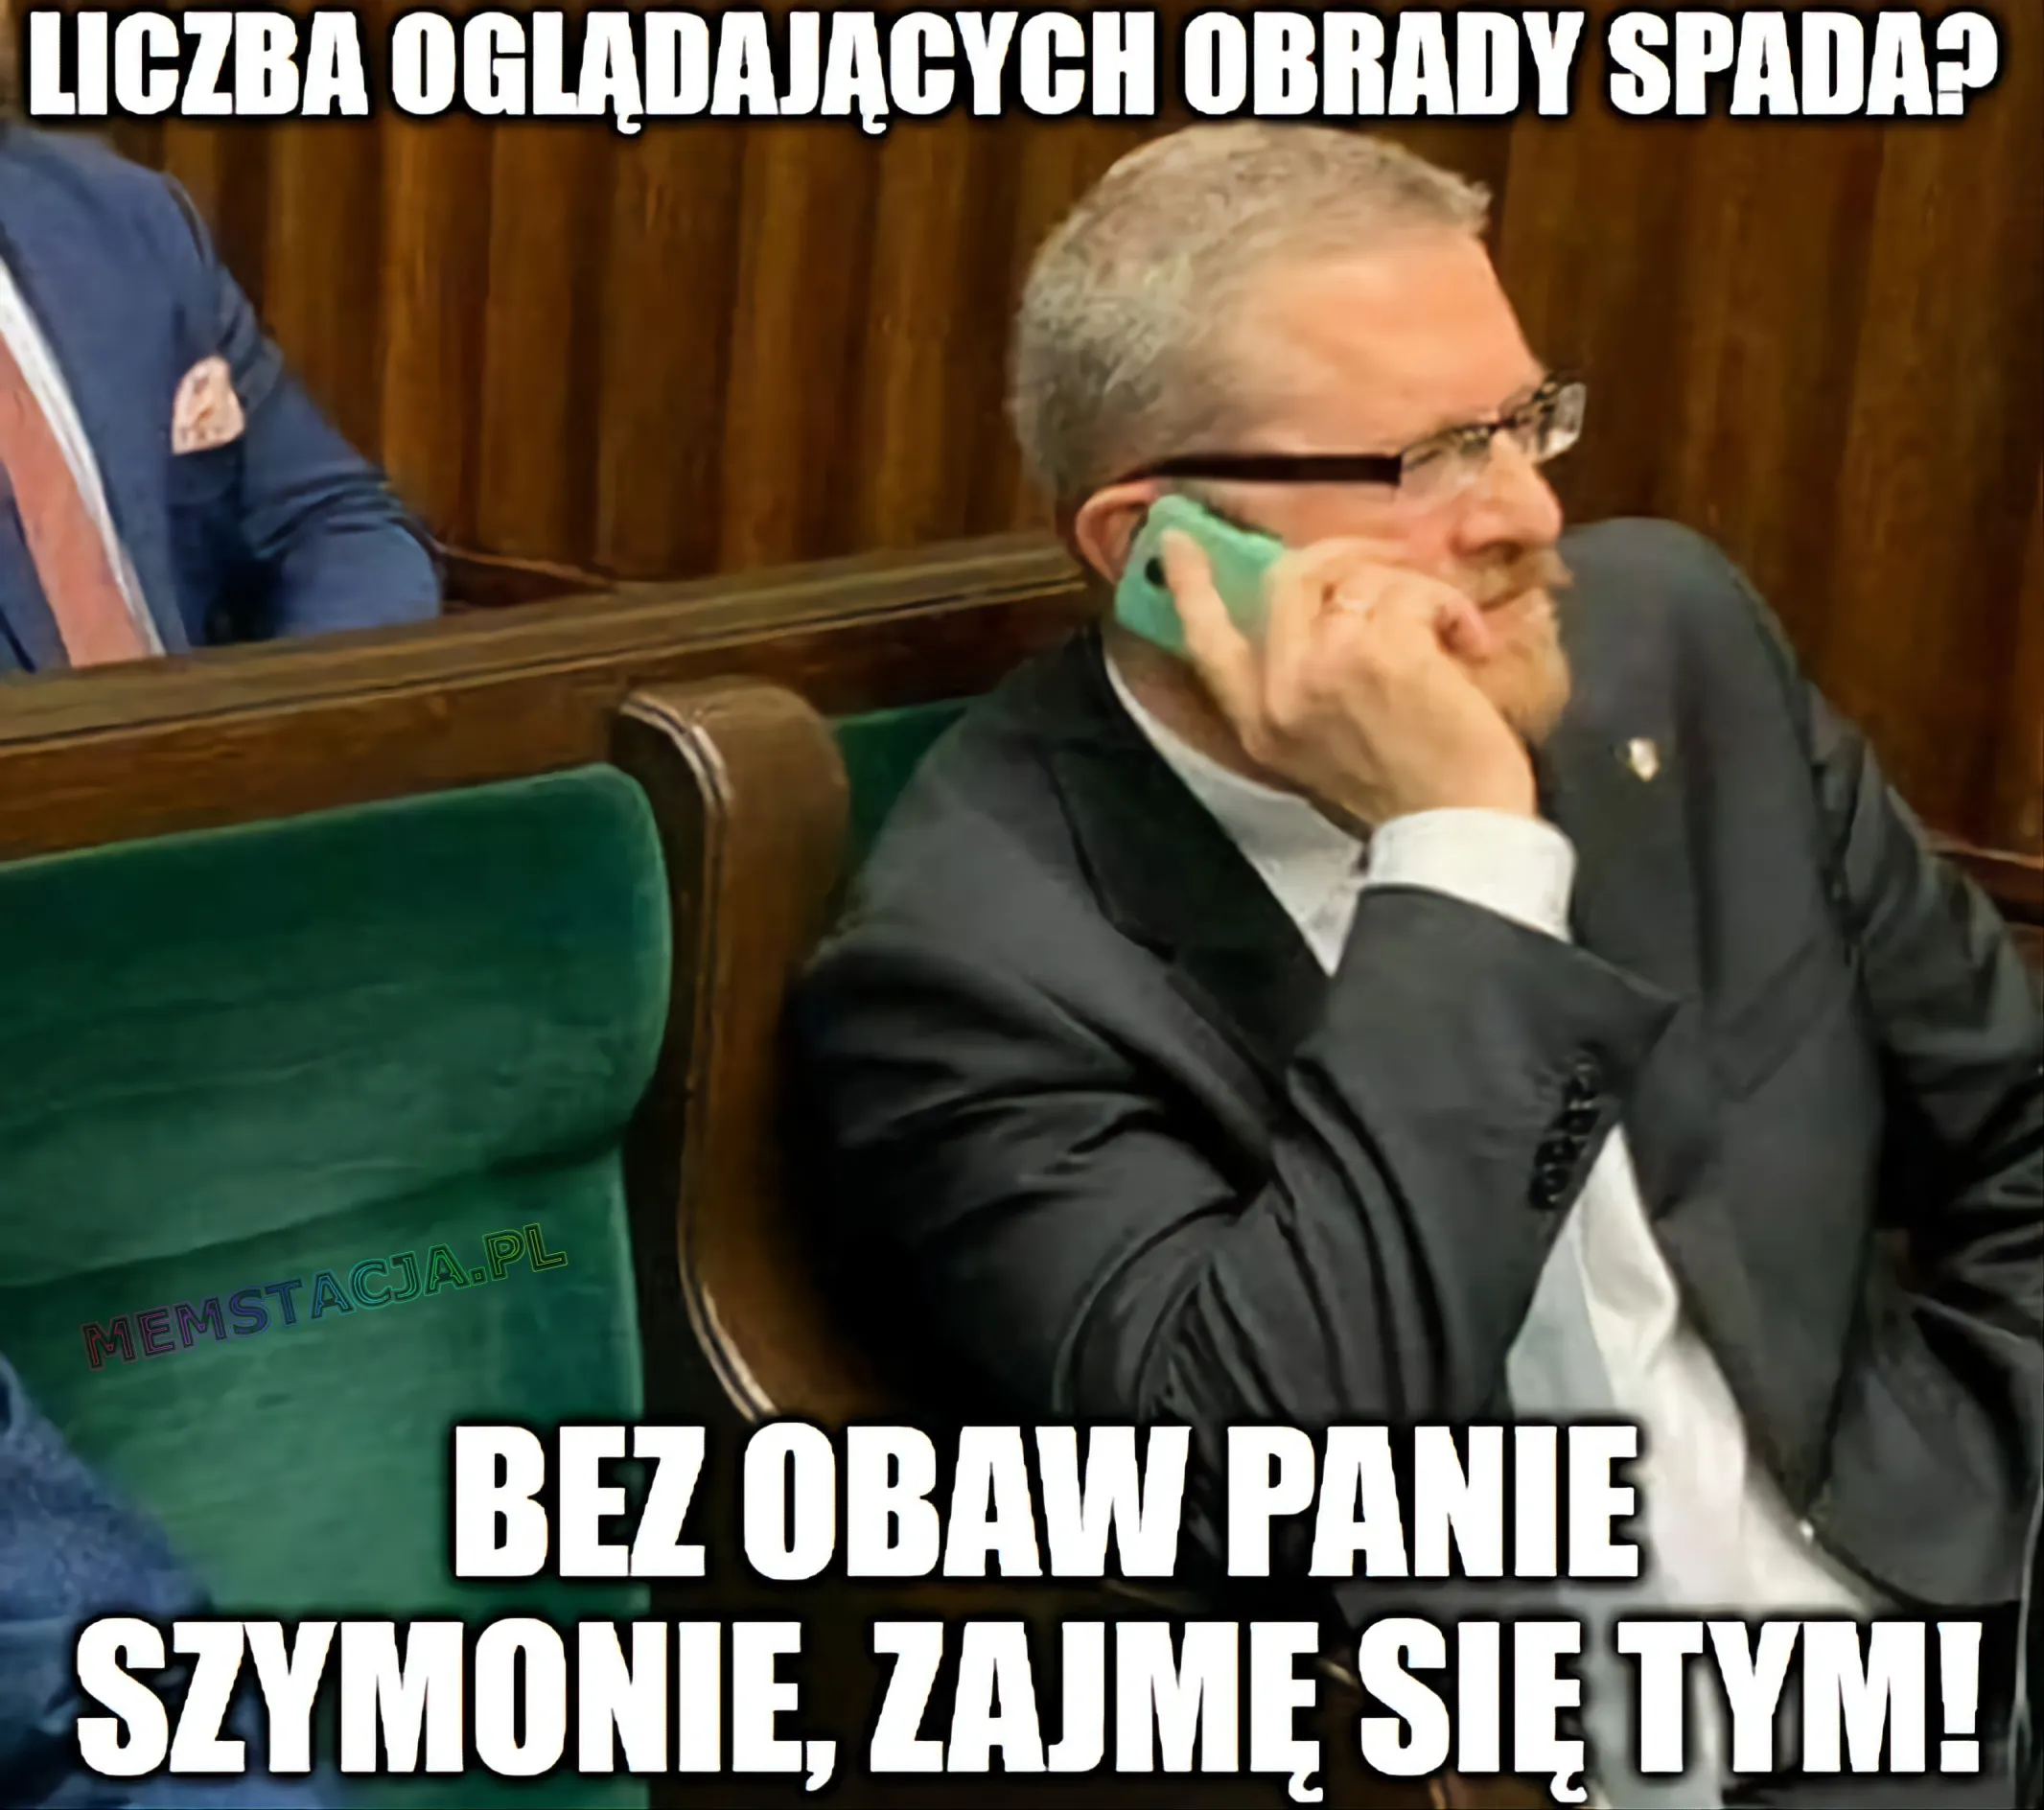 Mem przedstawiający Posła Grzegorza Brauna rozmawiającego przed telefon z Marszałkiem Hołownią: 'Liczba oglądających spada? Bez obaw Panie Szymonie, zajmę się tym!'